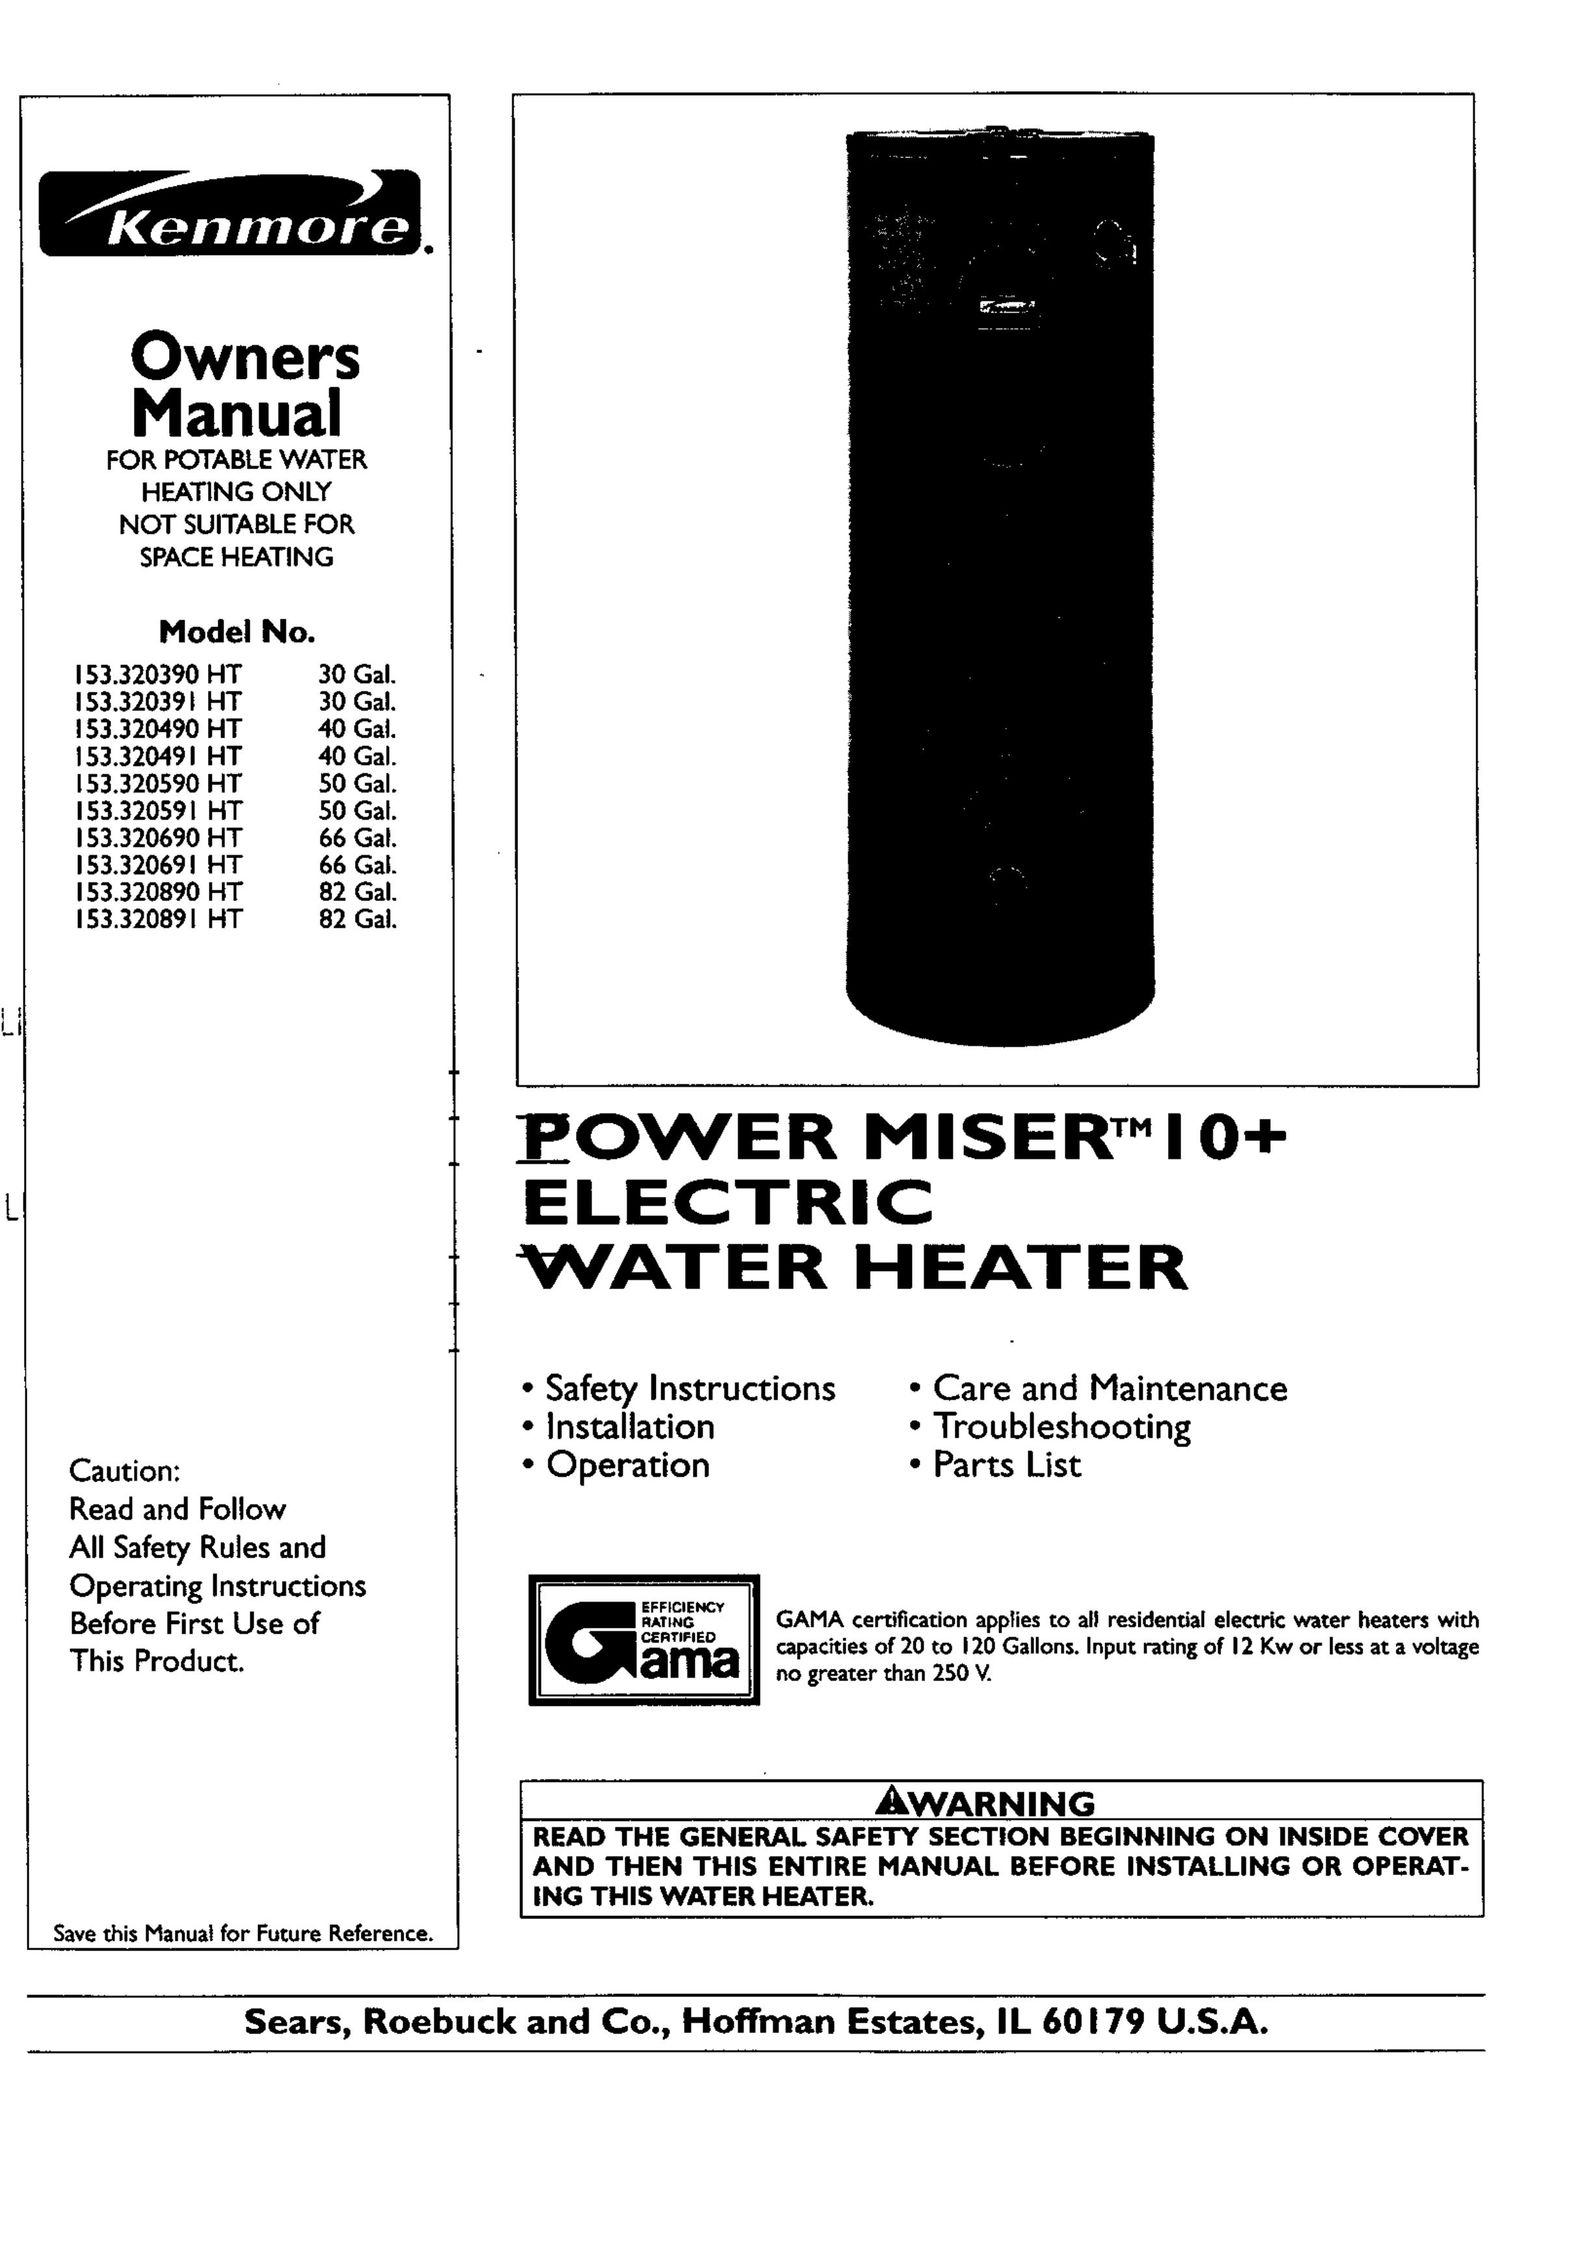 Kenmore 153.320890 HT 82 GAL Water Heater User Manual